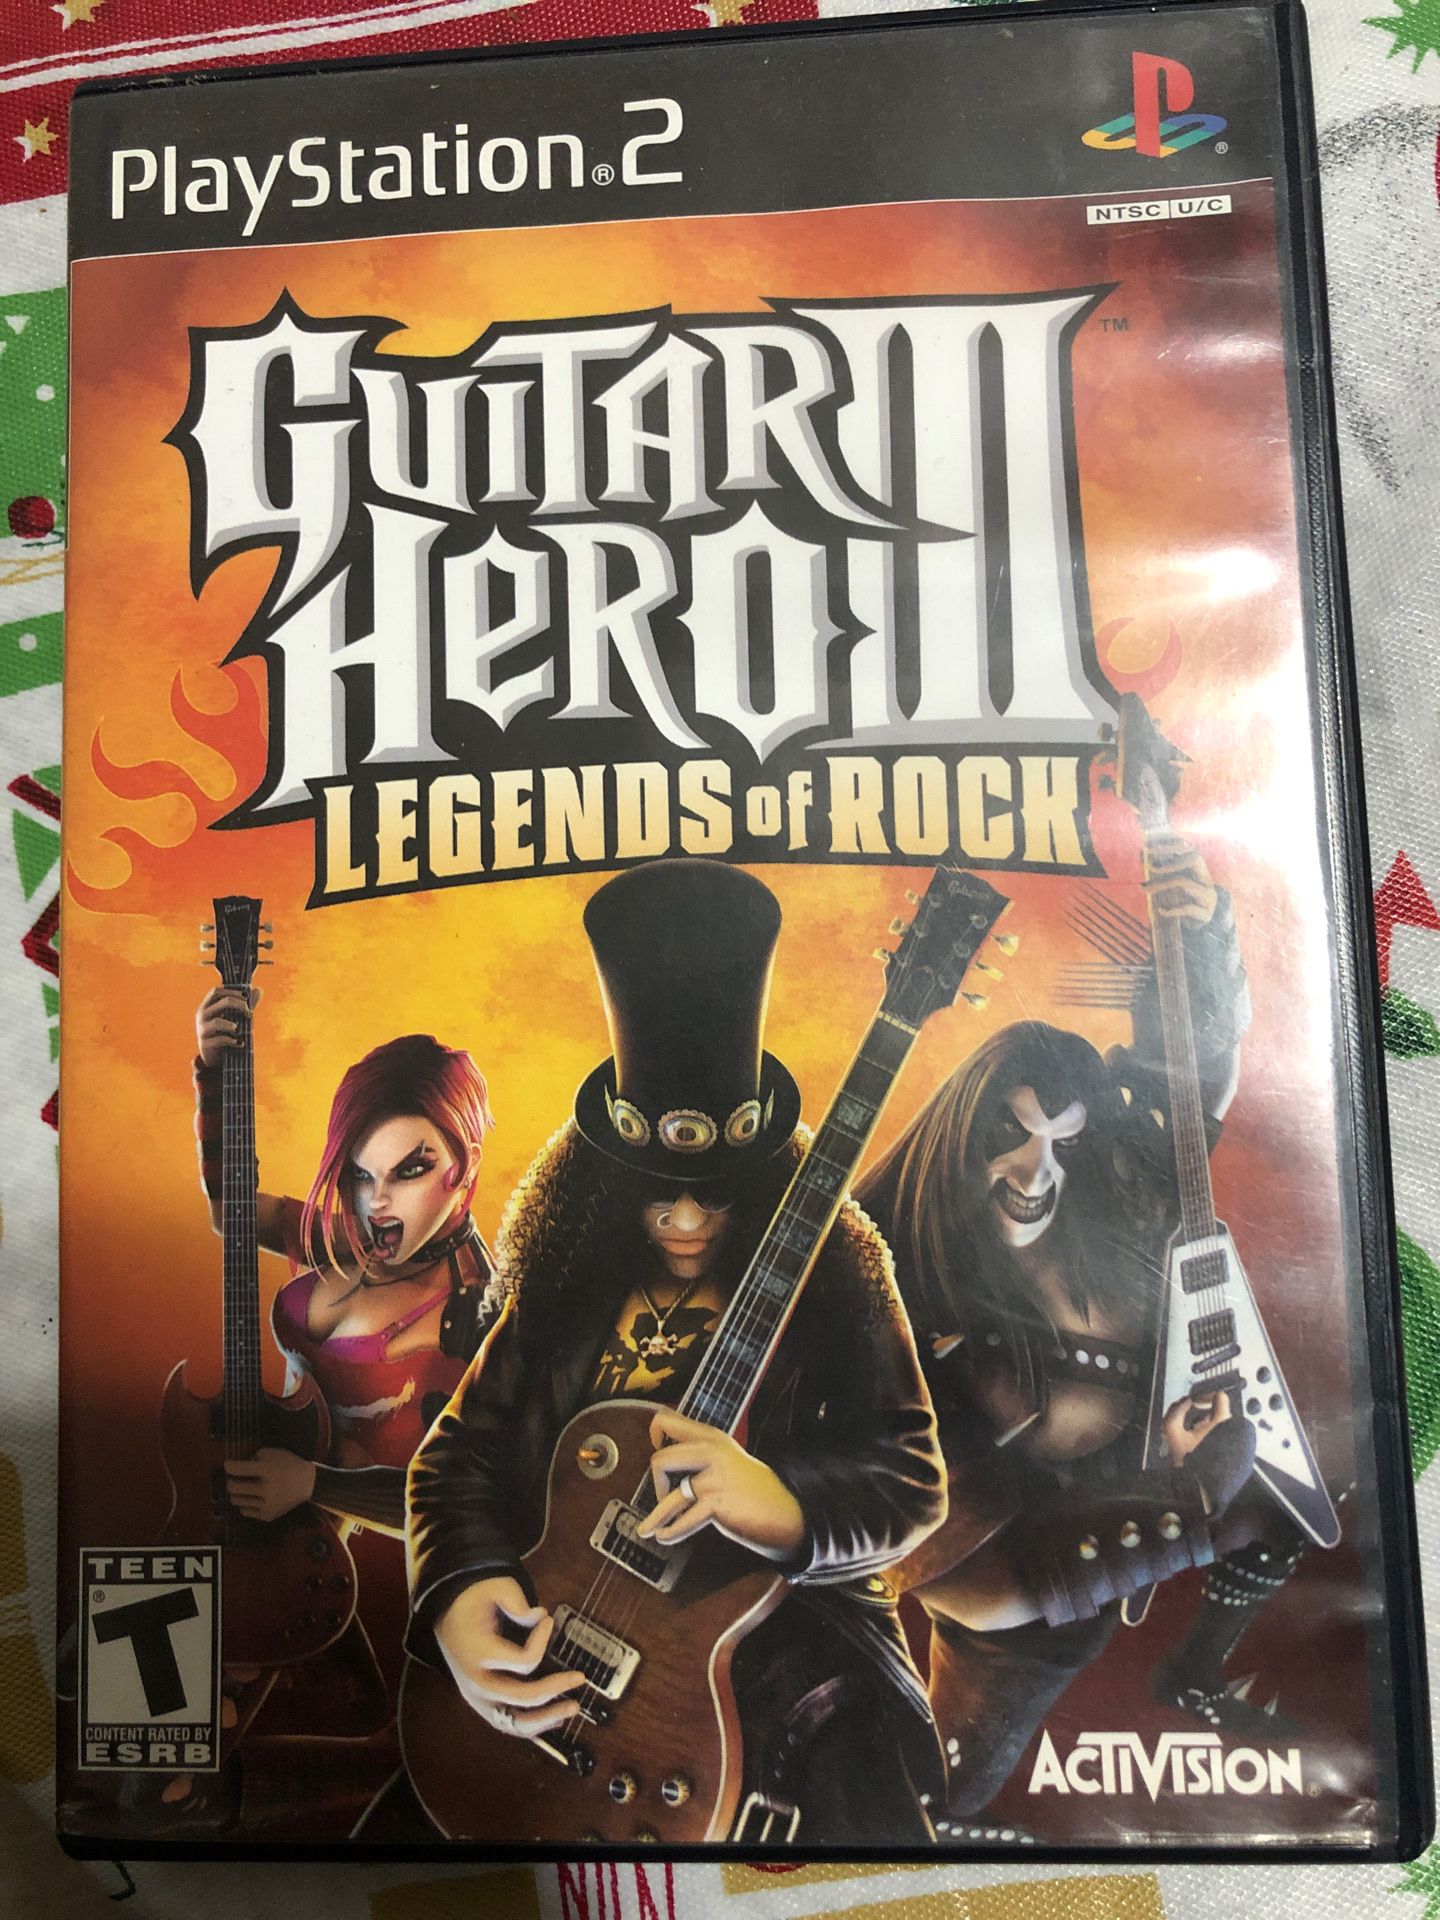 Guitar hero 3 PS2